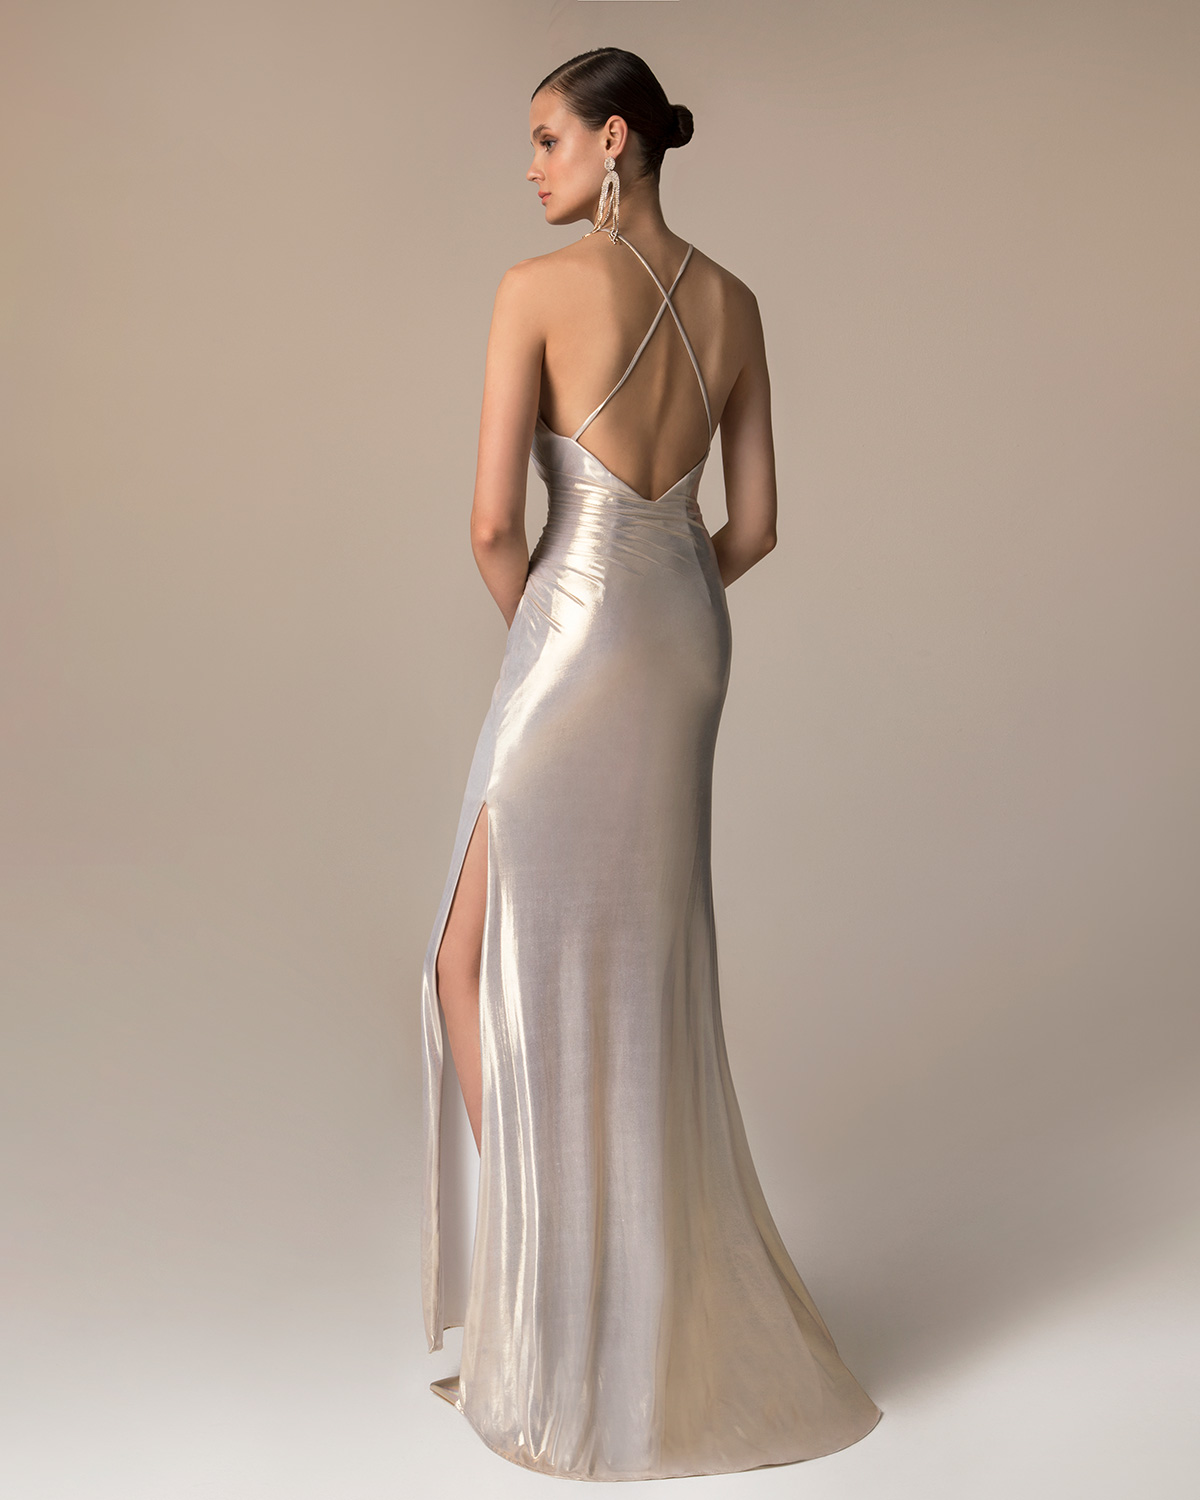 Βραδυνά Φορέματα / Βραδινό μακρύ ελαστικό φόρεμα από lurex με χιαστή τιράντες